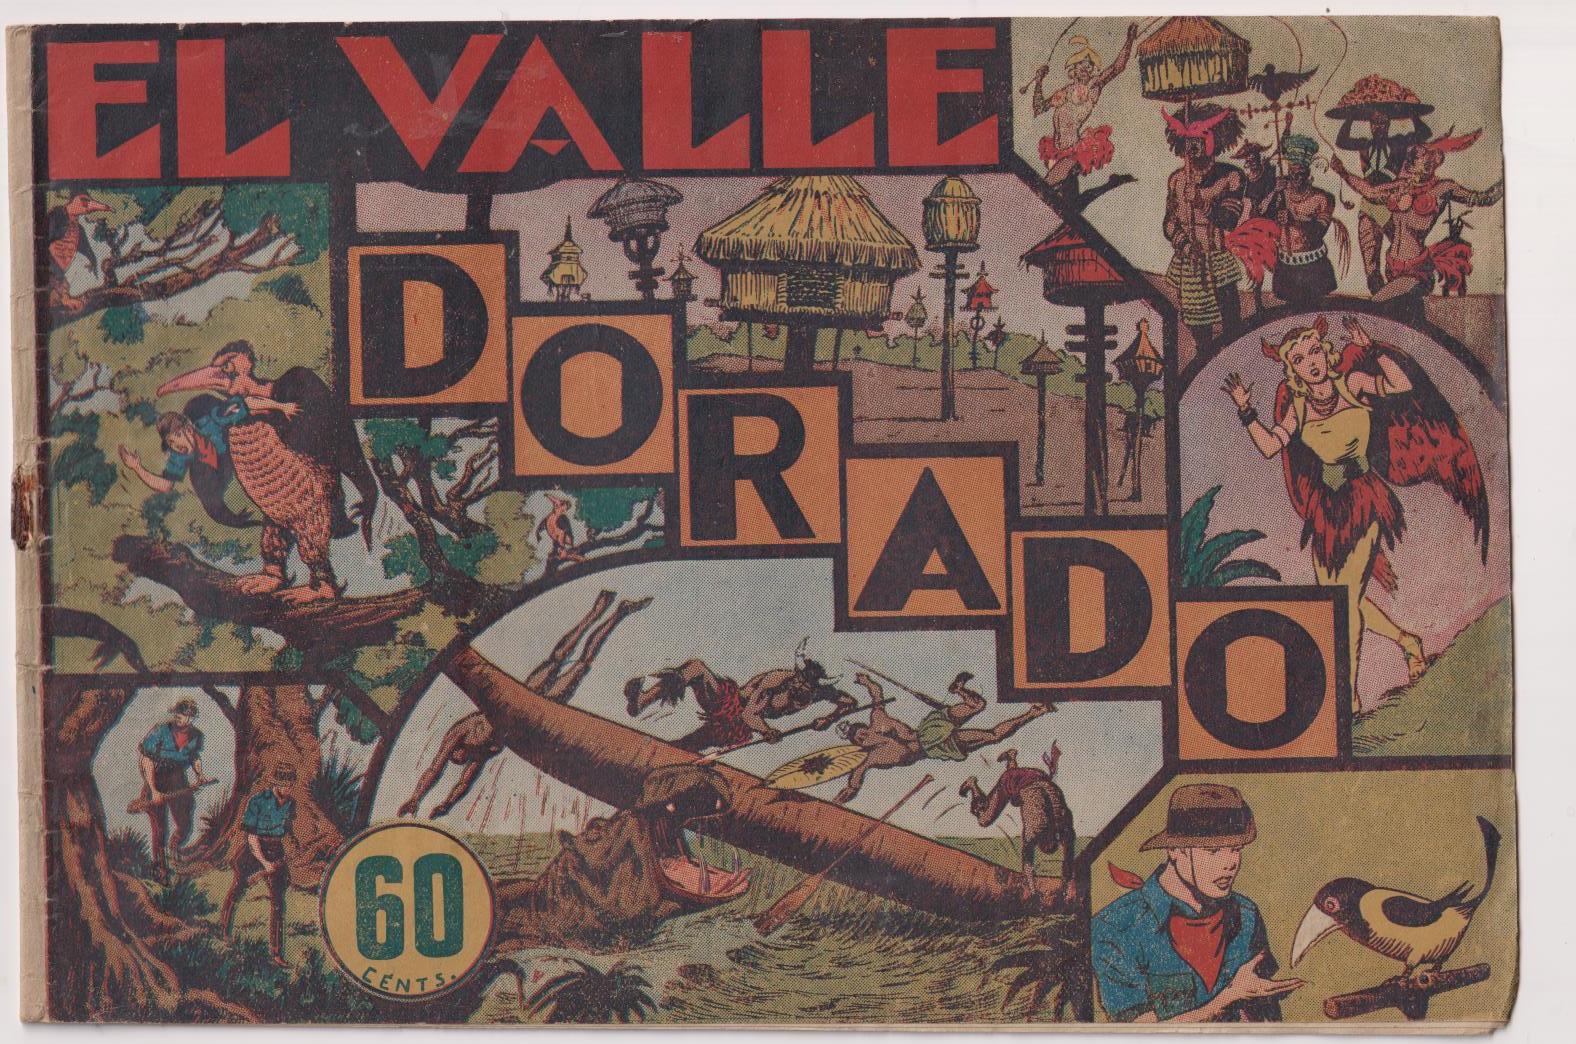 Jorge y Fernando nº 16. El Valle Dorado. Hispano Americana 1940